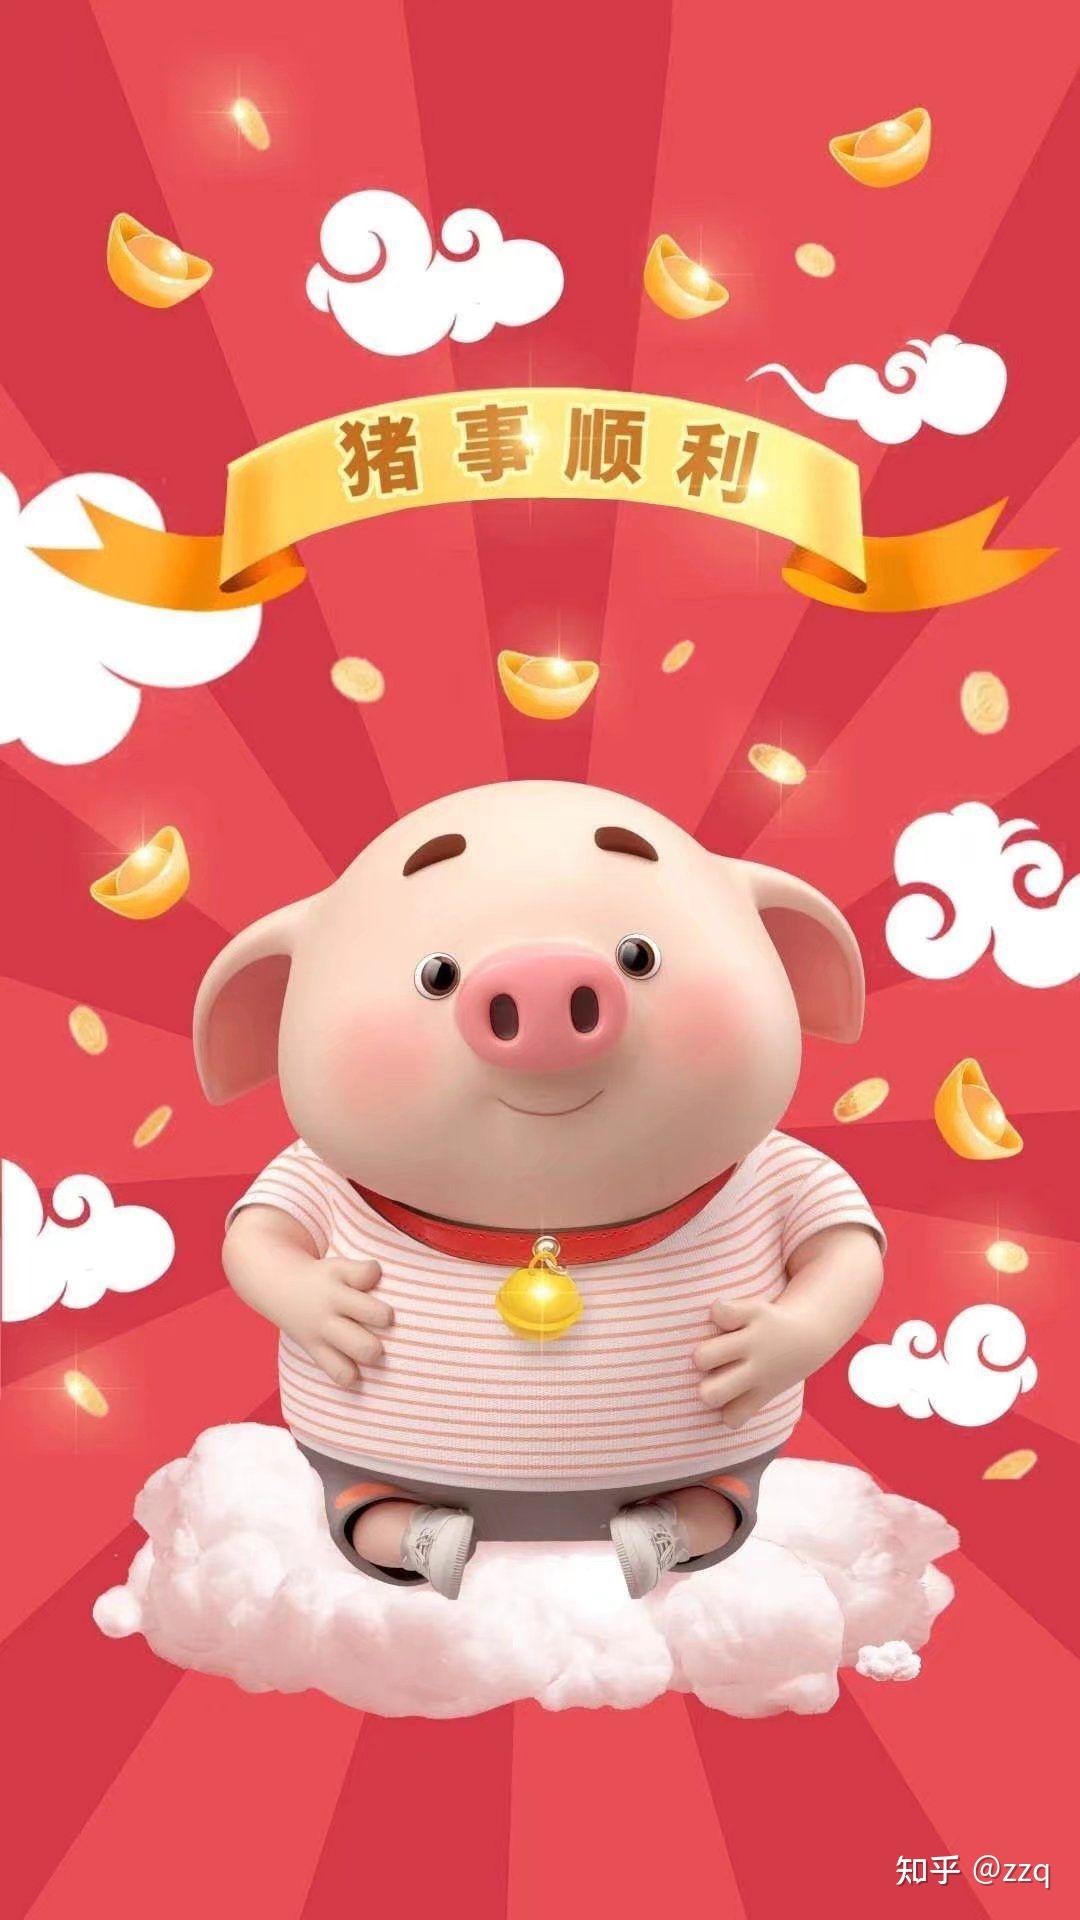 屁登喜欢吃饺子的原因终于揭秘了-搞笑视频-搜狐视频